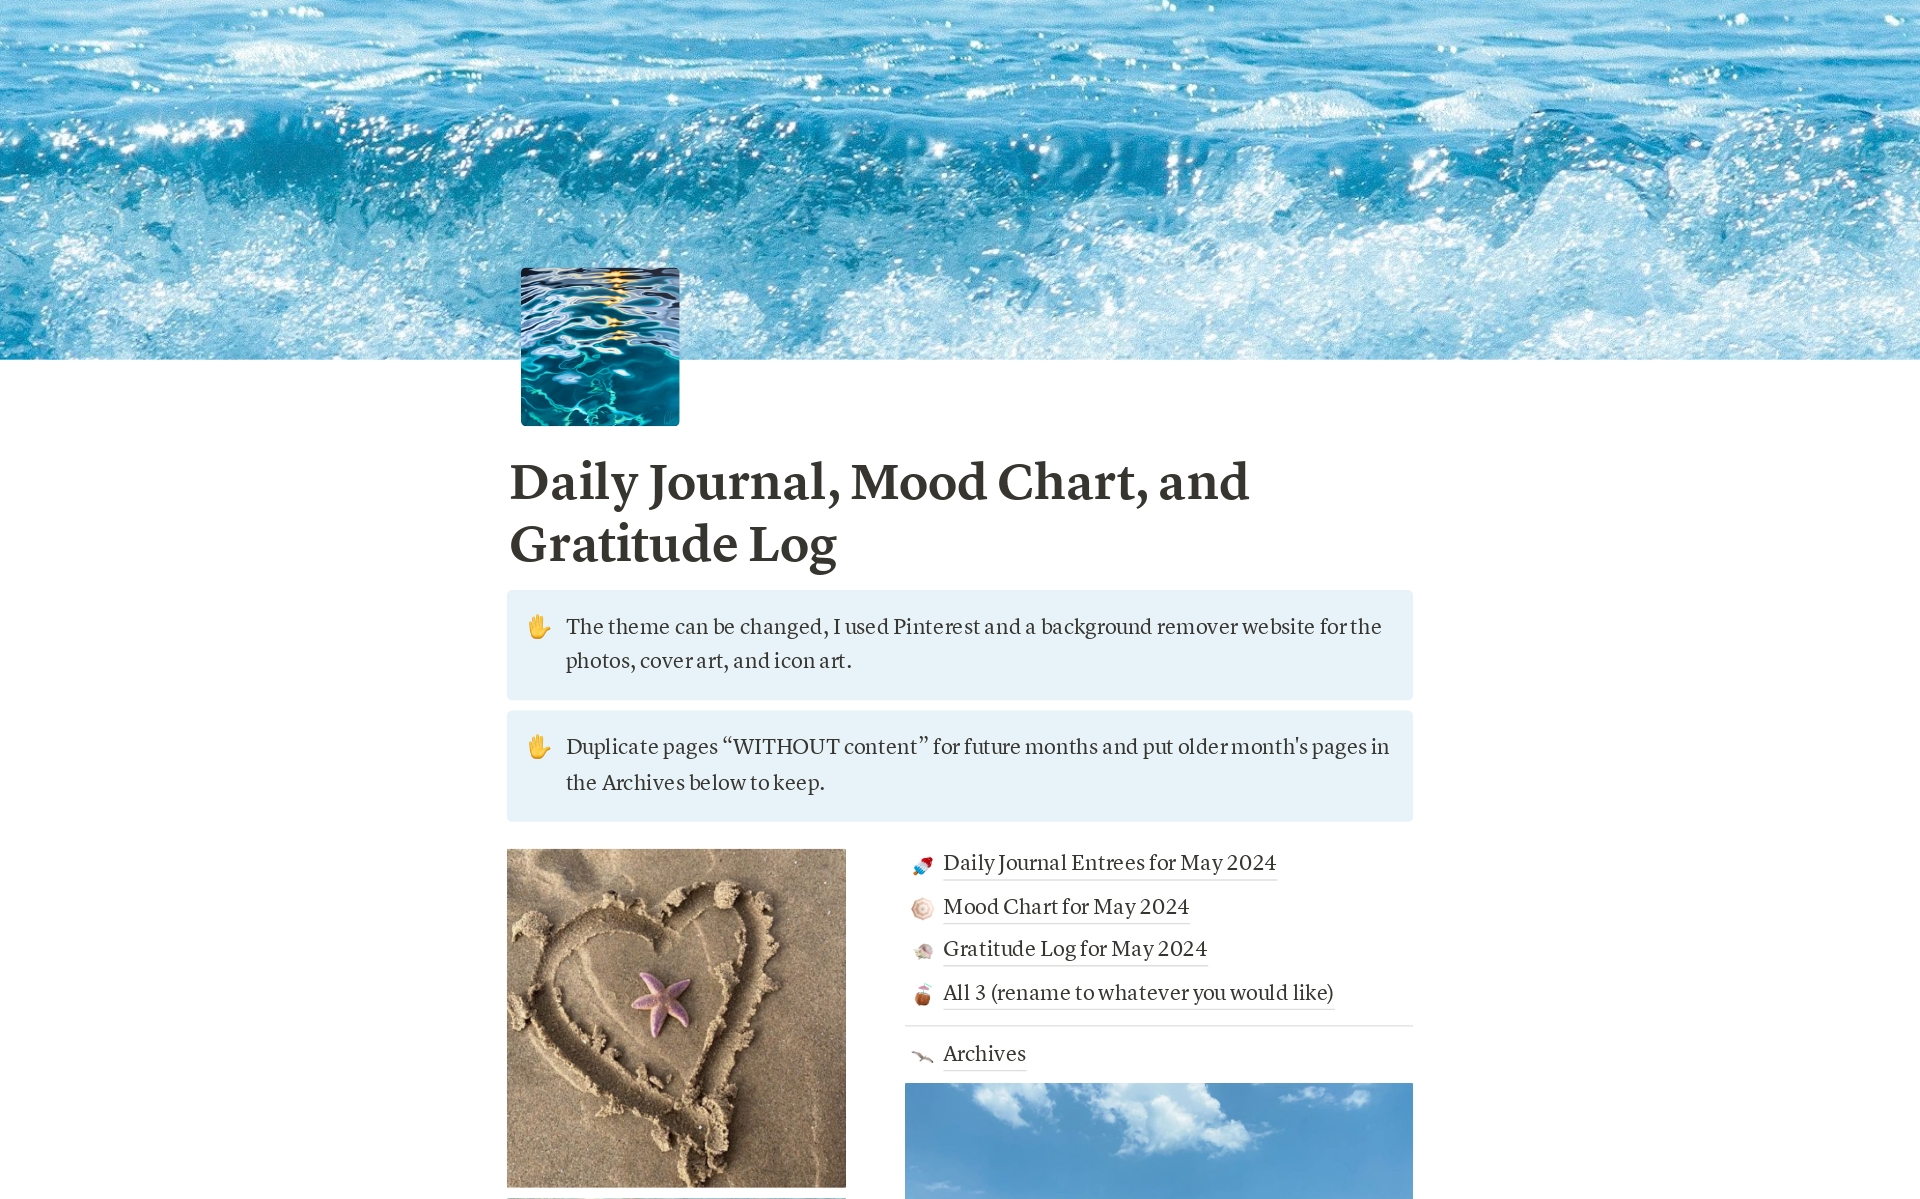 Uma prévia do modelo para Daily Journal, Mood Chart, and Gratitude Log